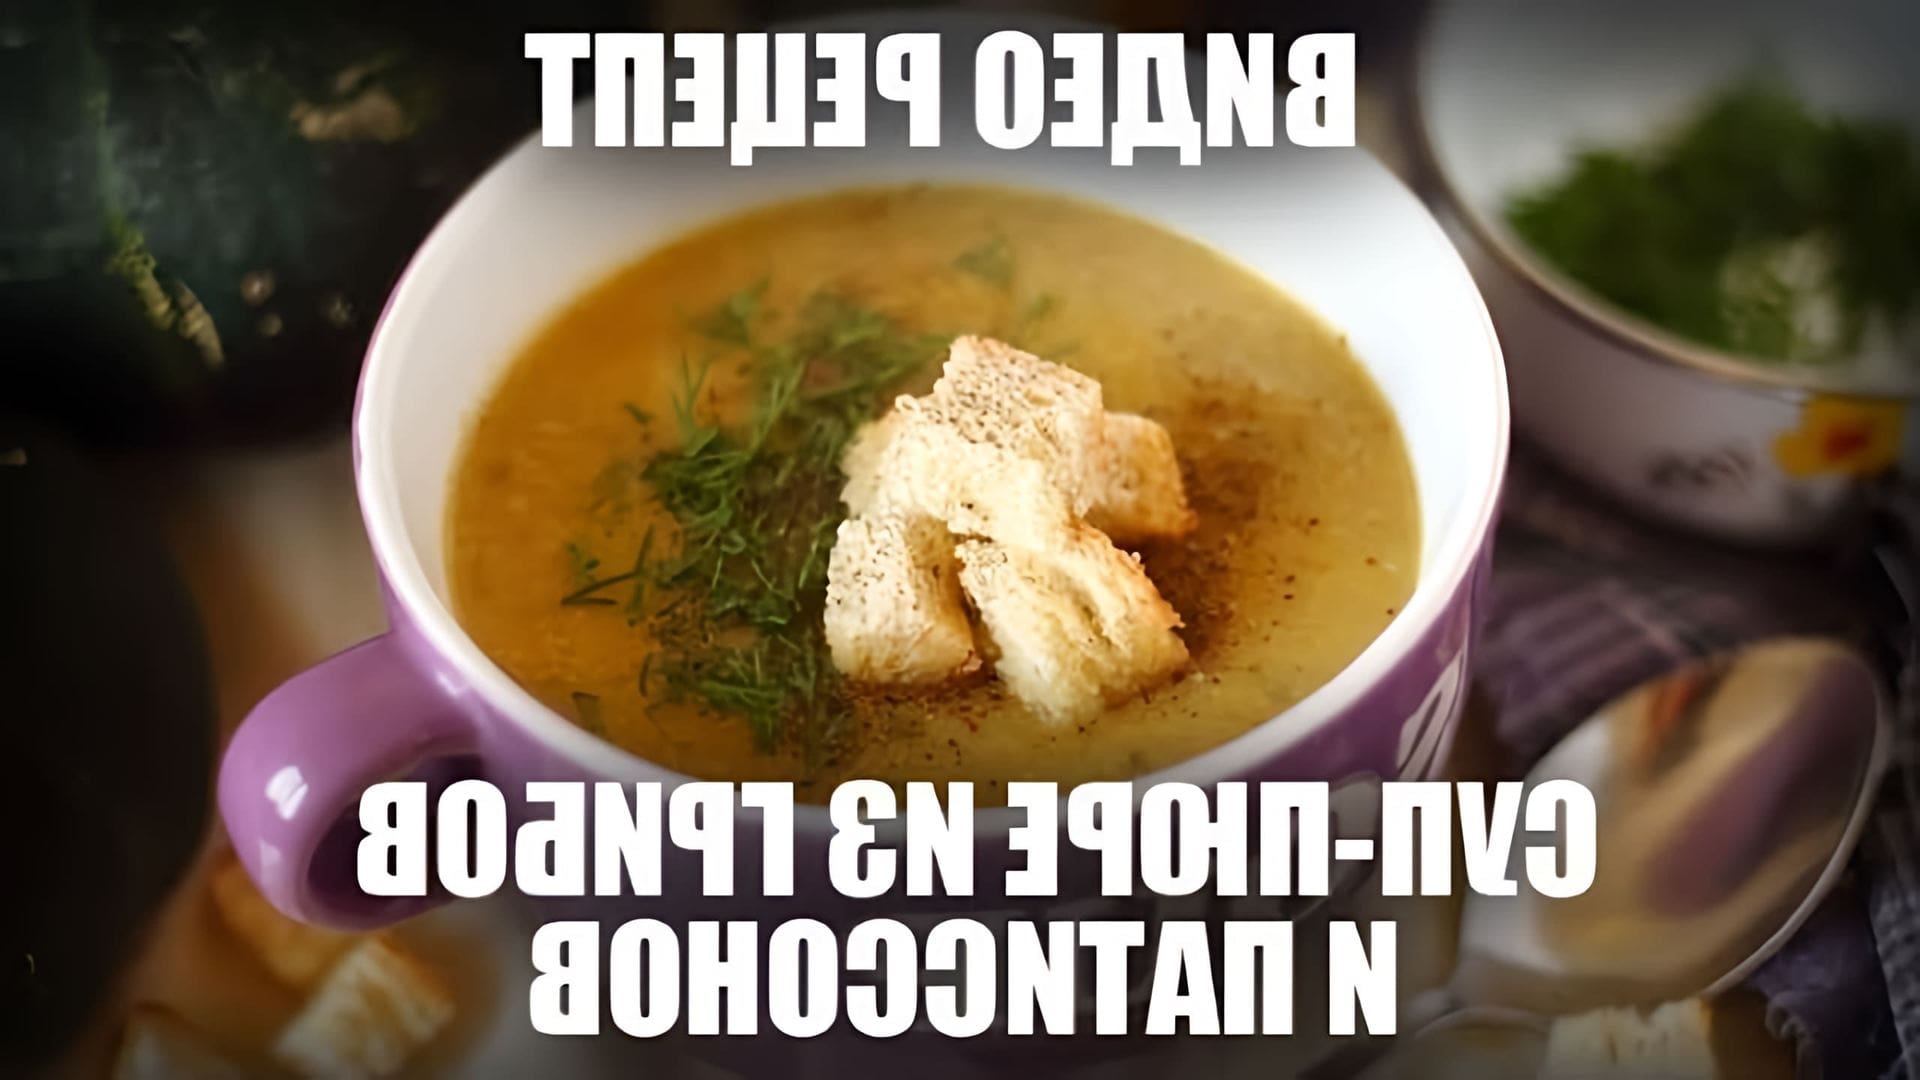 В данном видео демонстрируется процесс приготовления супа-пюре из грибов и патиссонов